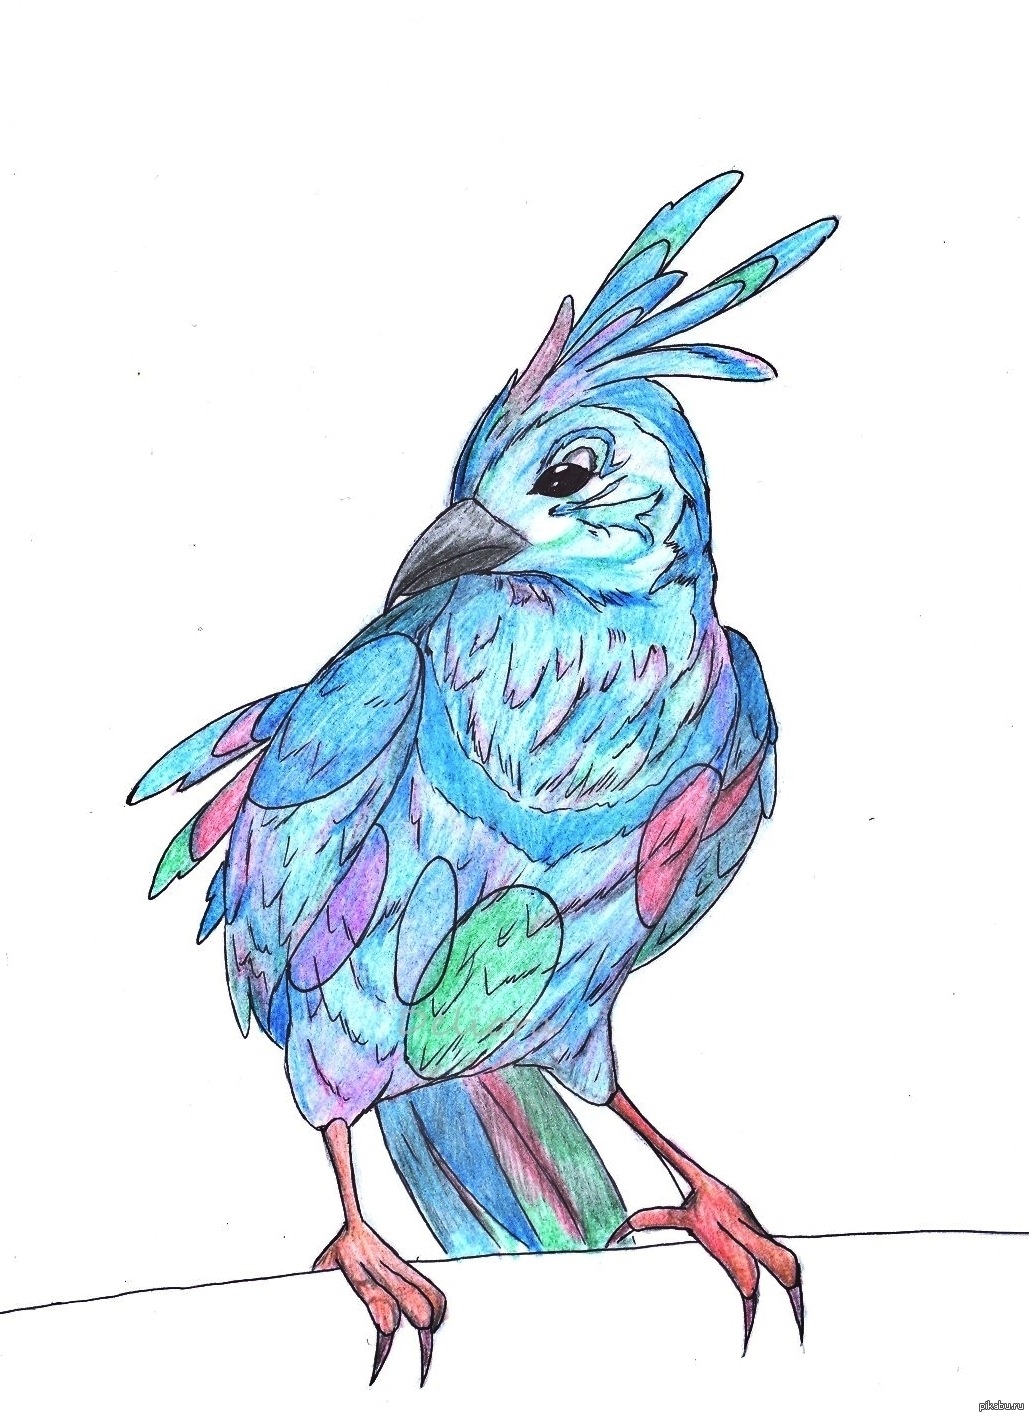 Срисовки красивых птиц. Птицы для срисовки. Рисунки птиц для срисовки. Рисунки для срисовки птицы легкие. Картинки птиц для срисовки цветные.